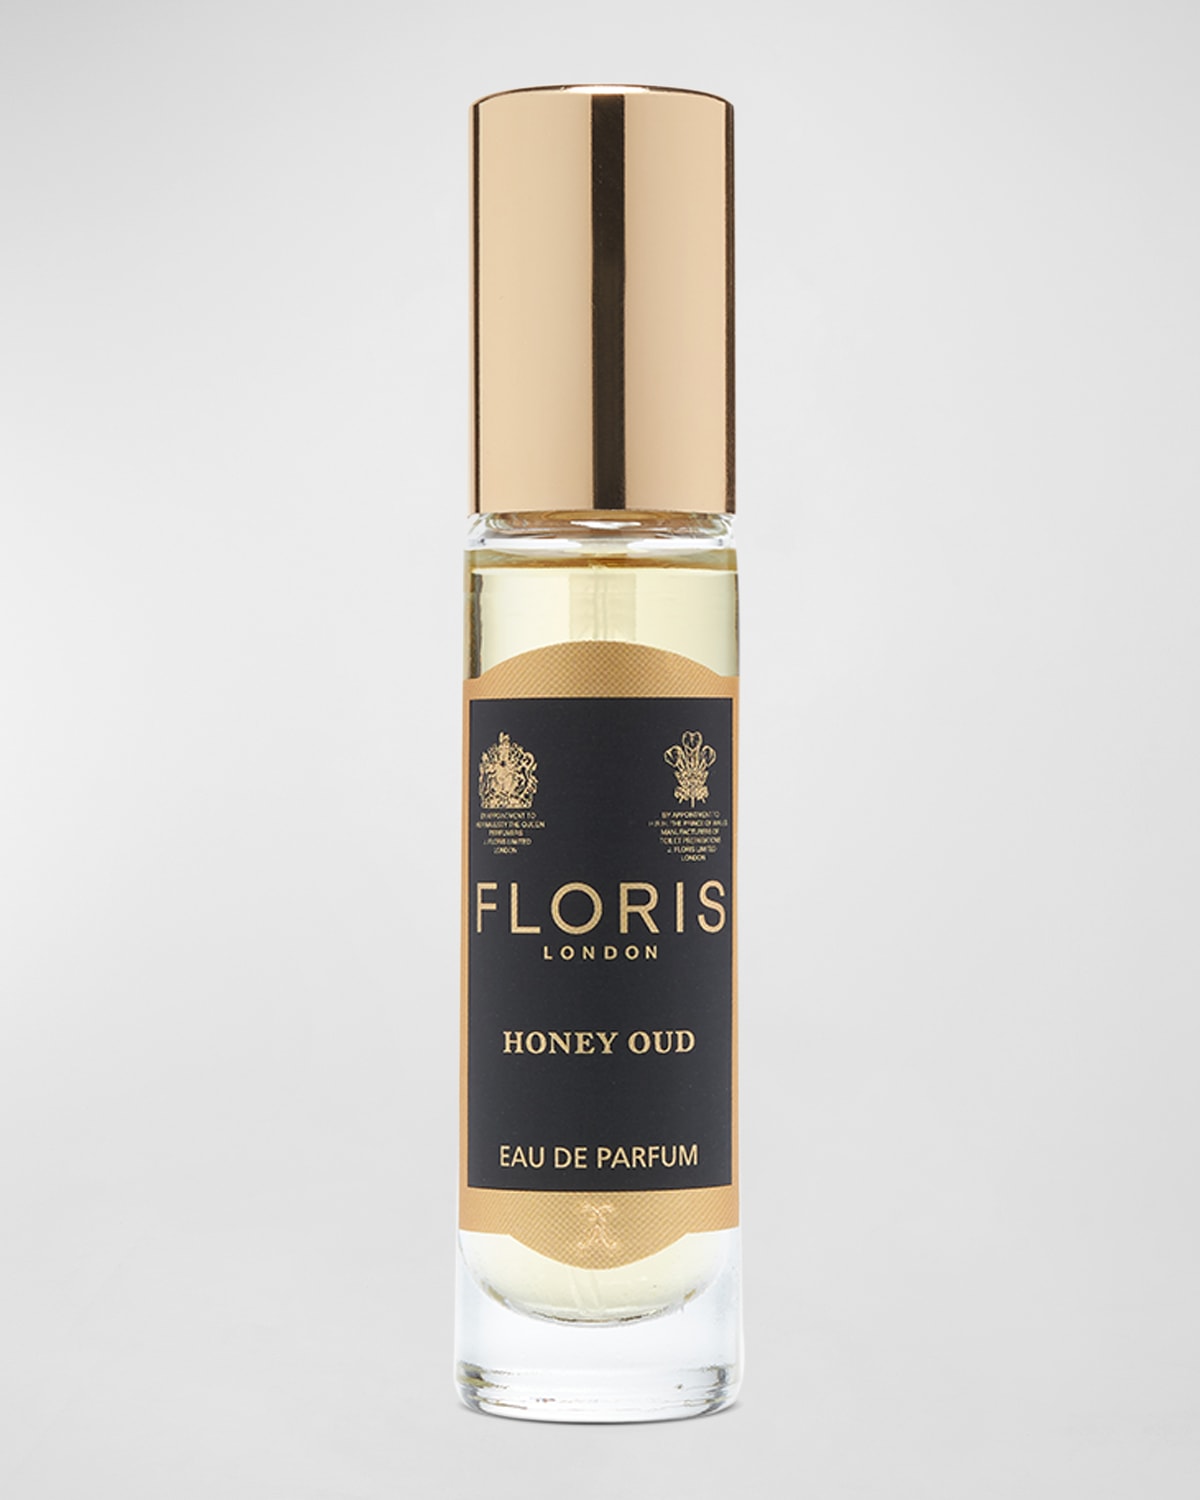 Floris London 0.33 oz. Honey Oud Eau de Parfum